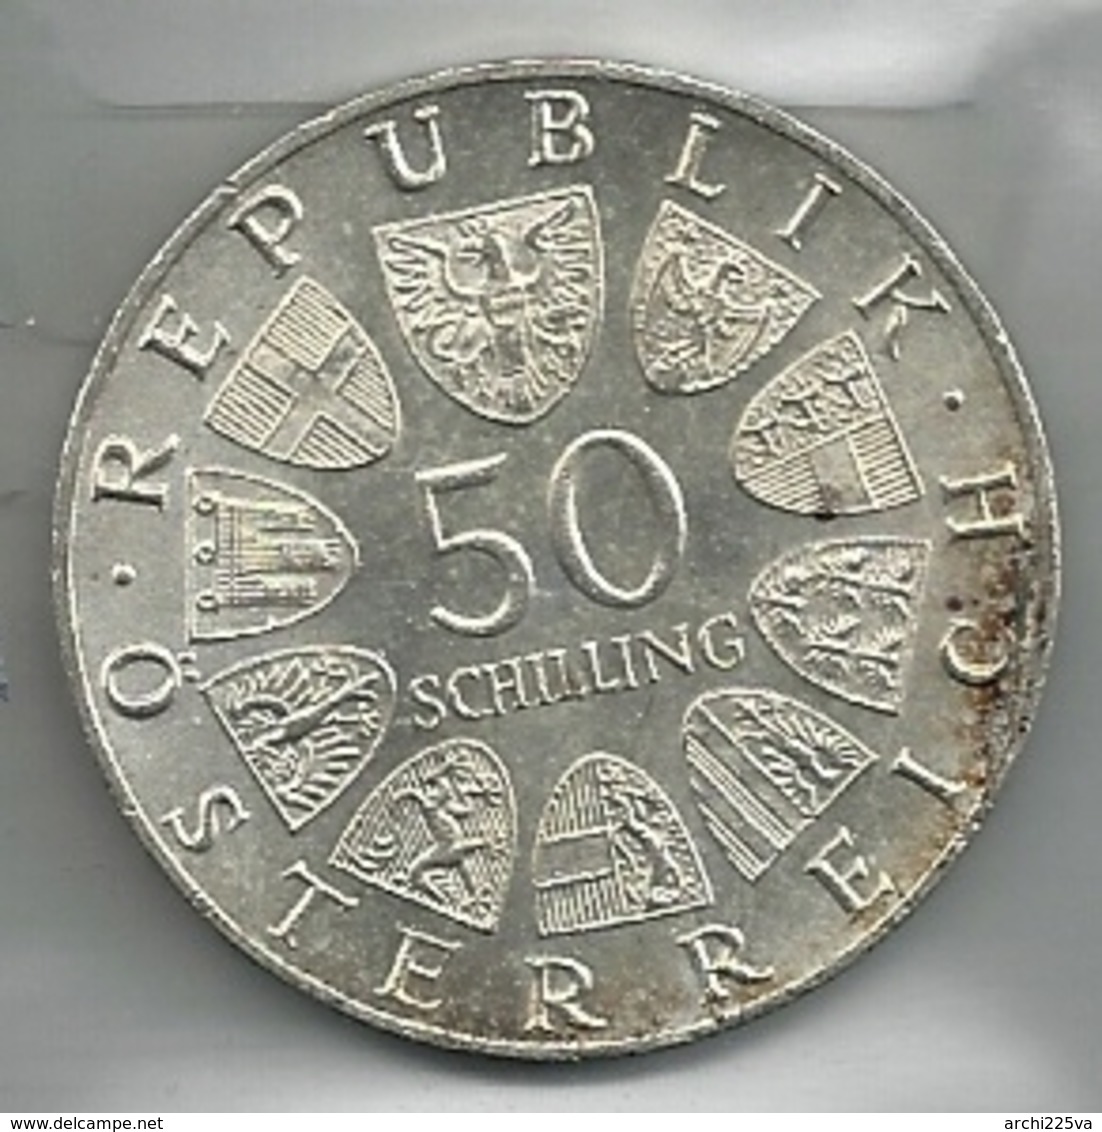 AUSTRIA 1965 - Rudolf DER STIFTER - 50 Schilling SPL / FDC - Argento / Argent / Silver - Confezione In Bustina - Austria